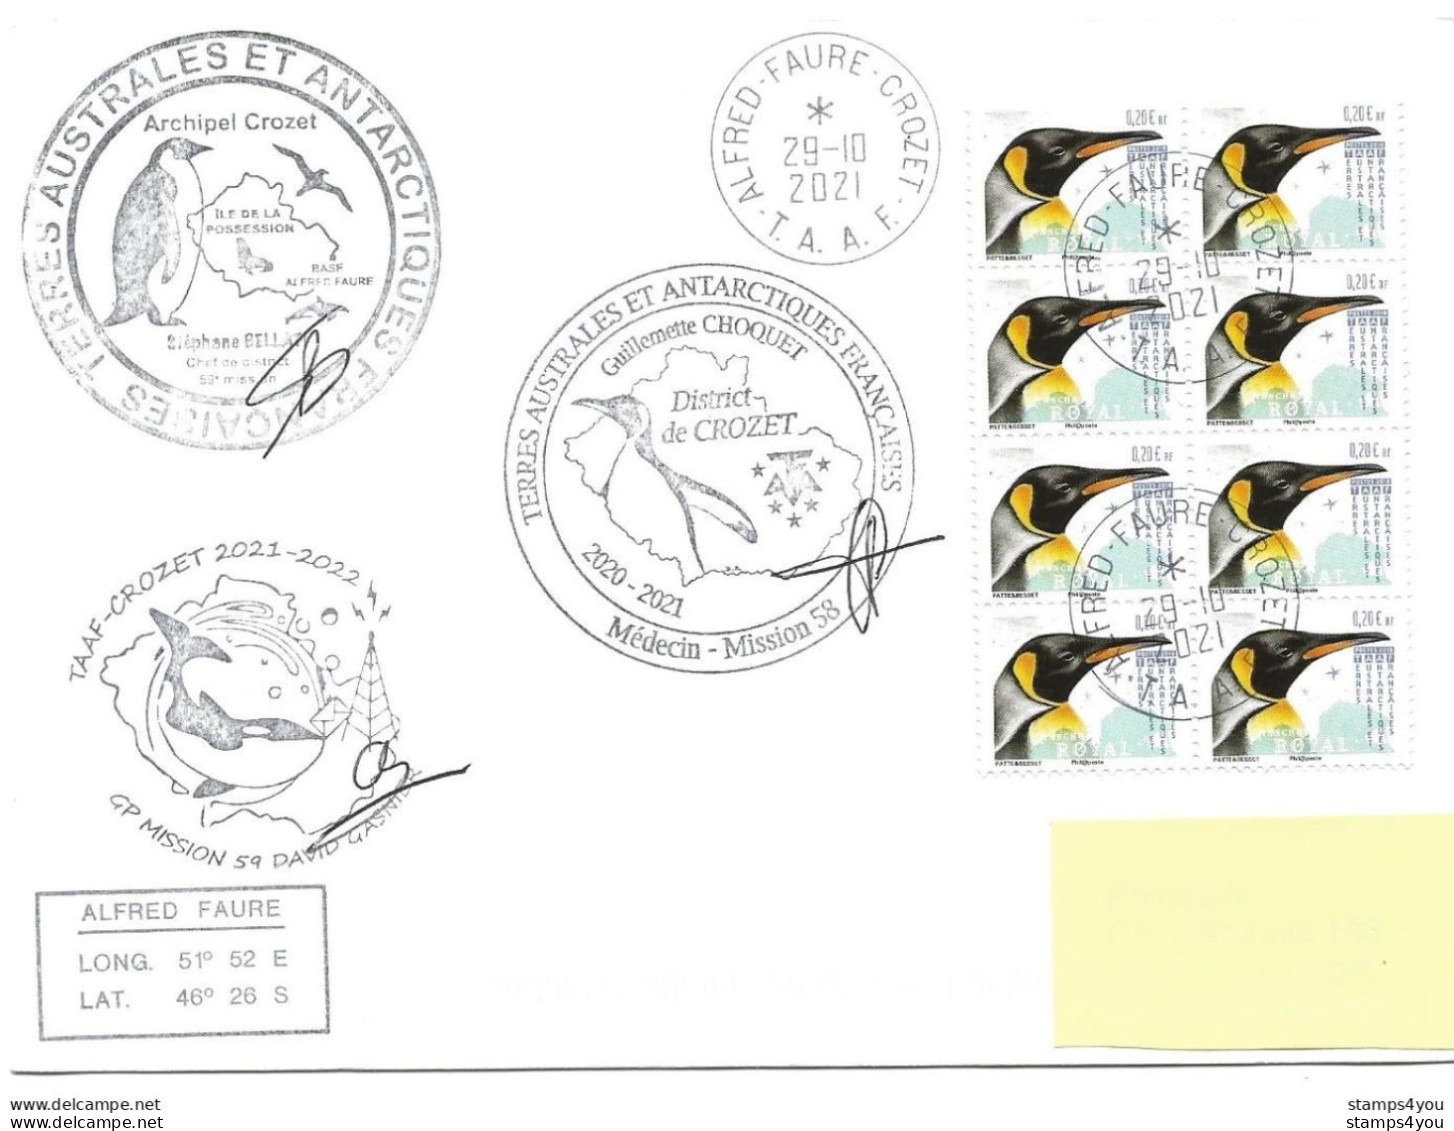 255 - 67 - Enveloippe TAAF Crozet - Cachets Illustrés Mission 59 - 2021 - Onderzoeksstations